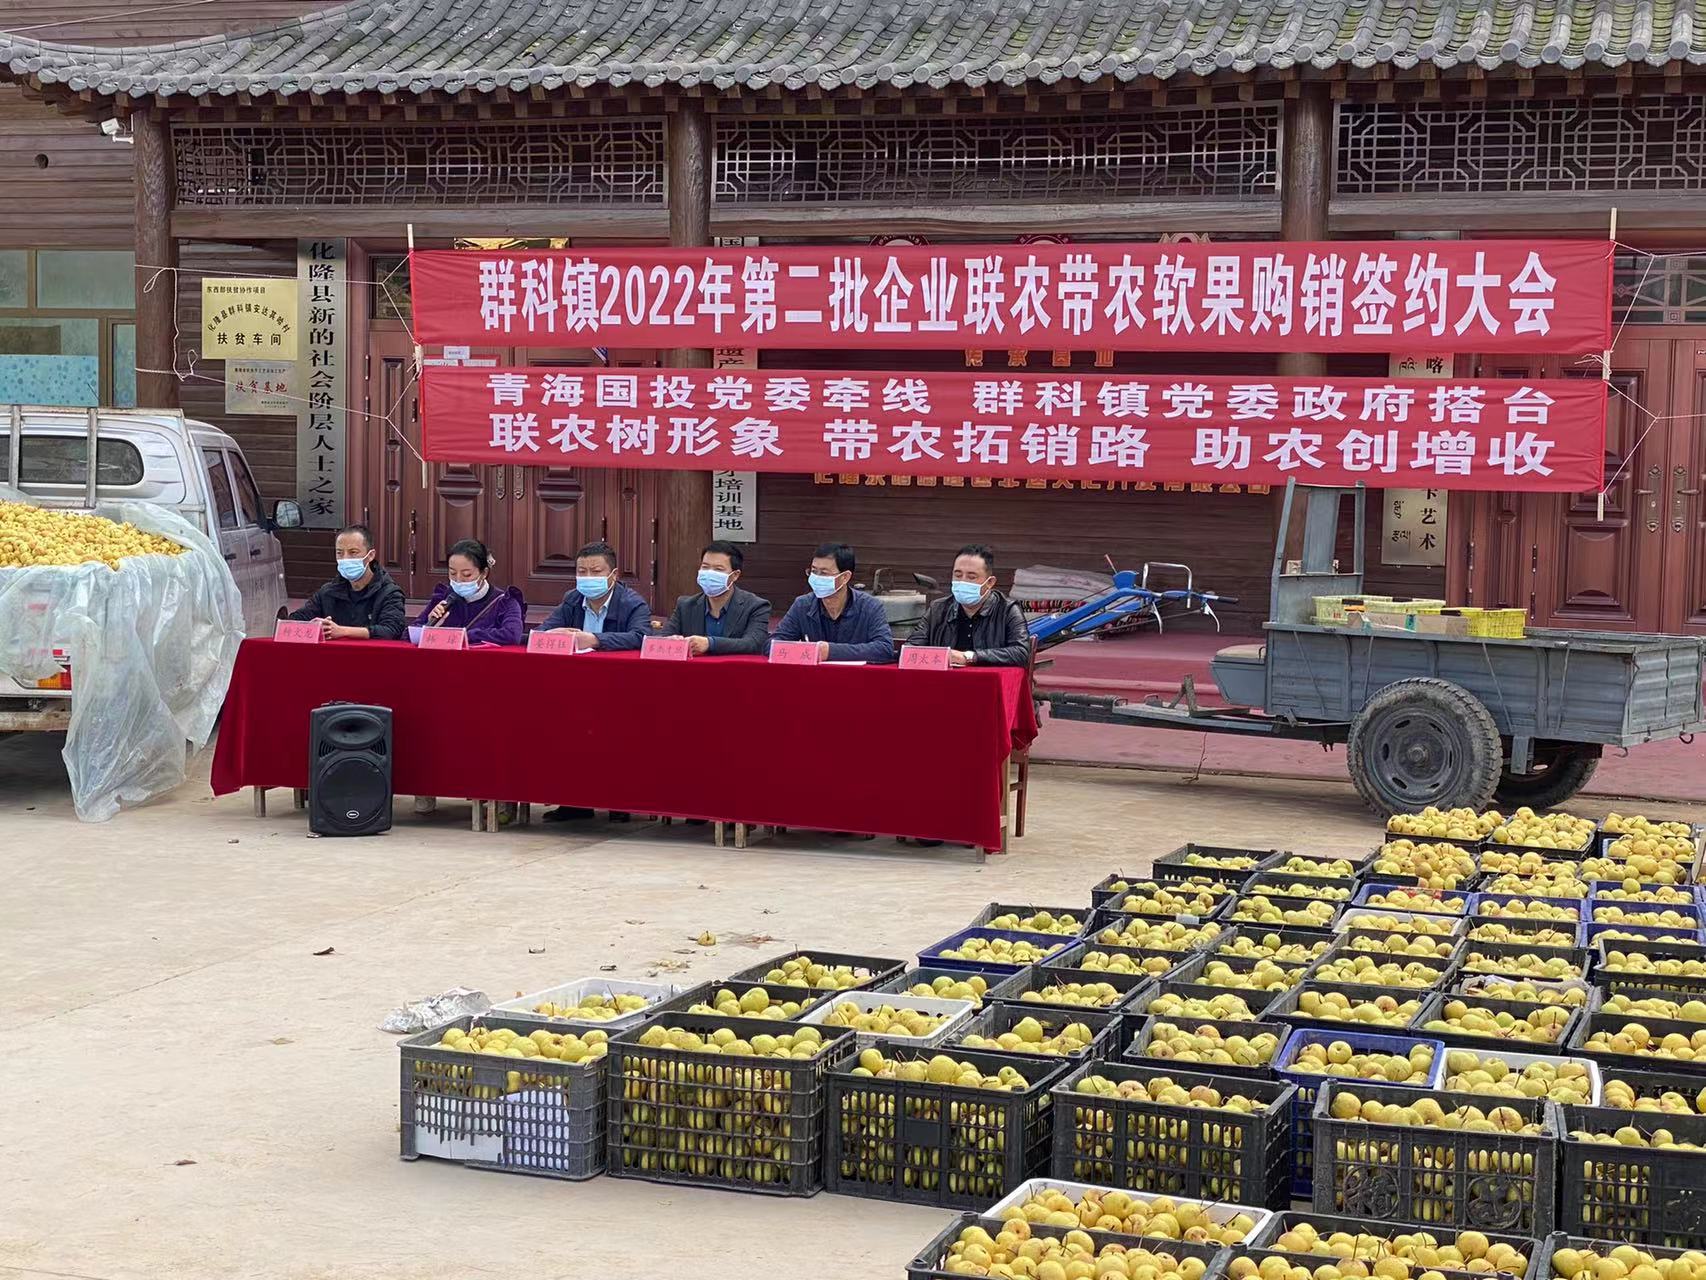 拼搏体育驻乙沙二村工作队积极帮助解决农产品滞销